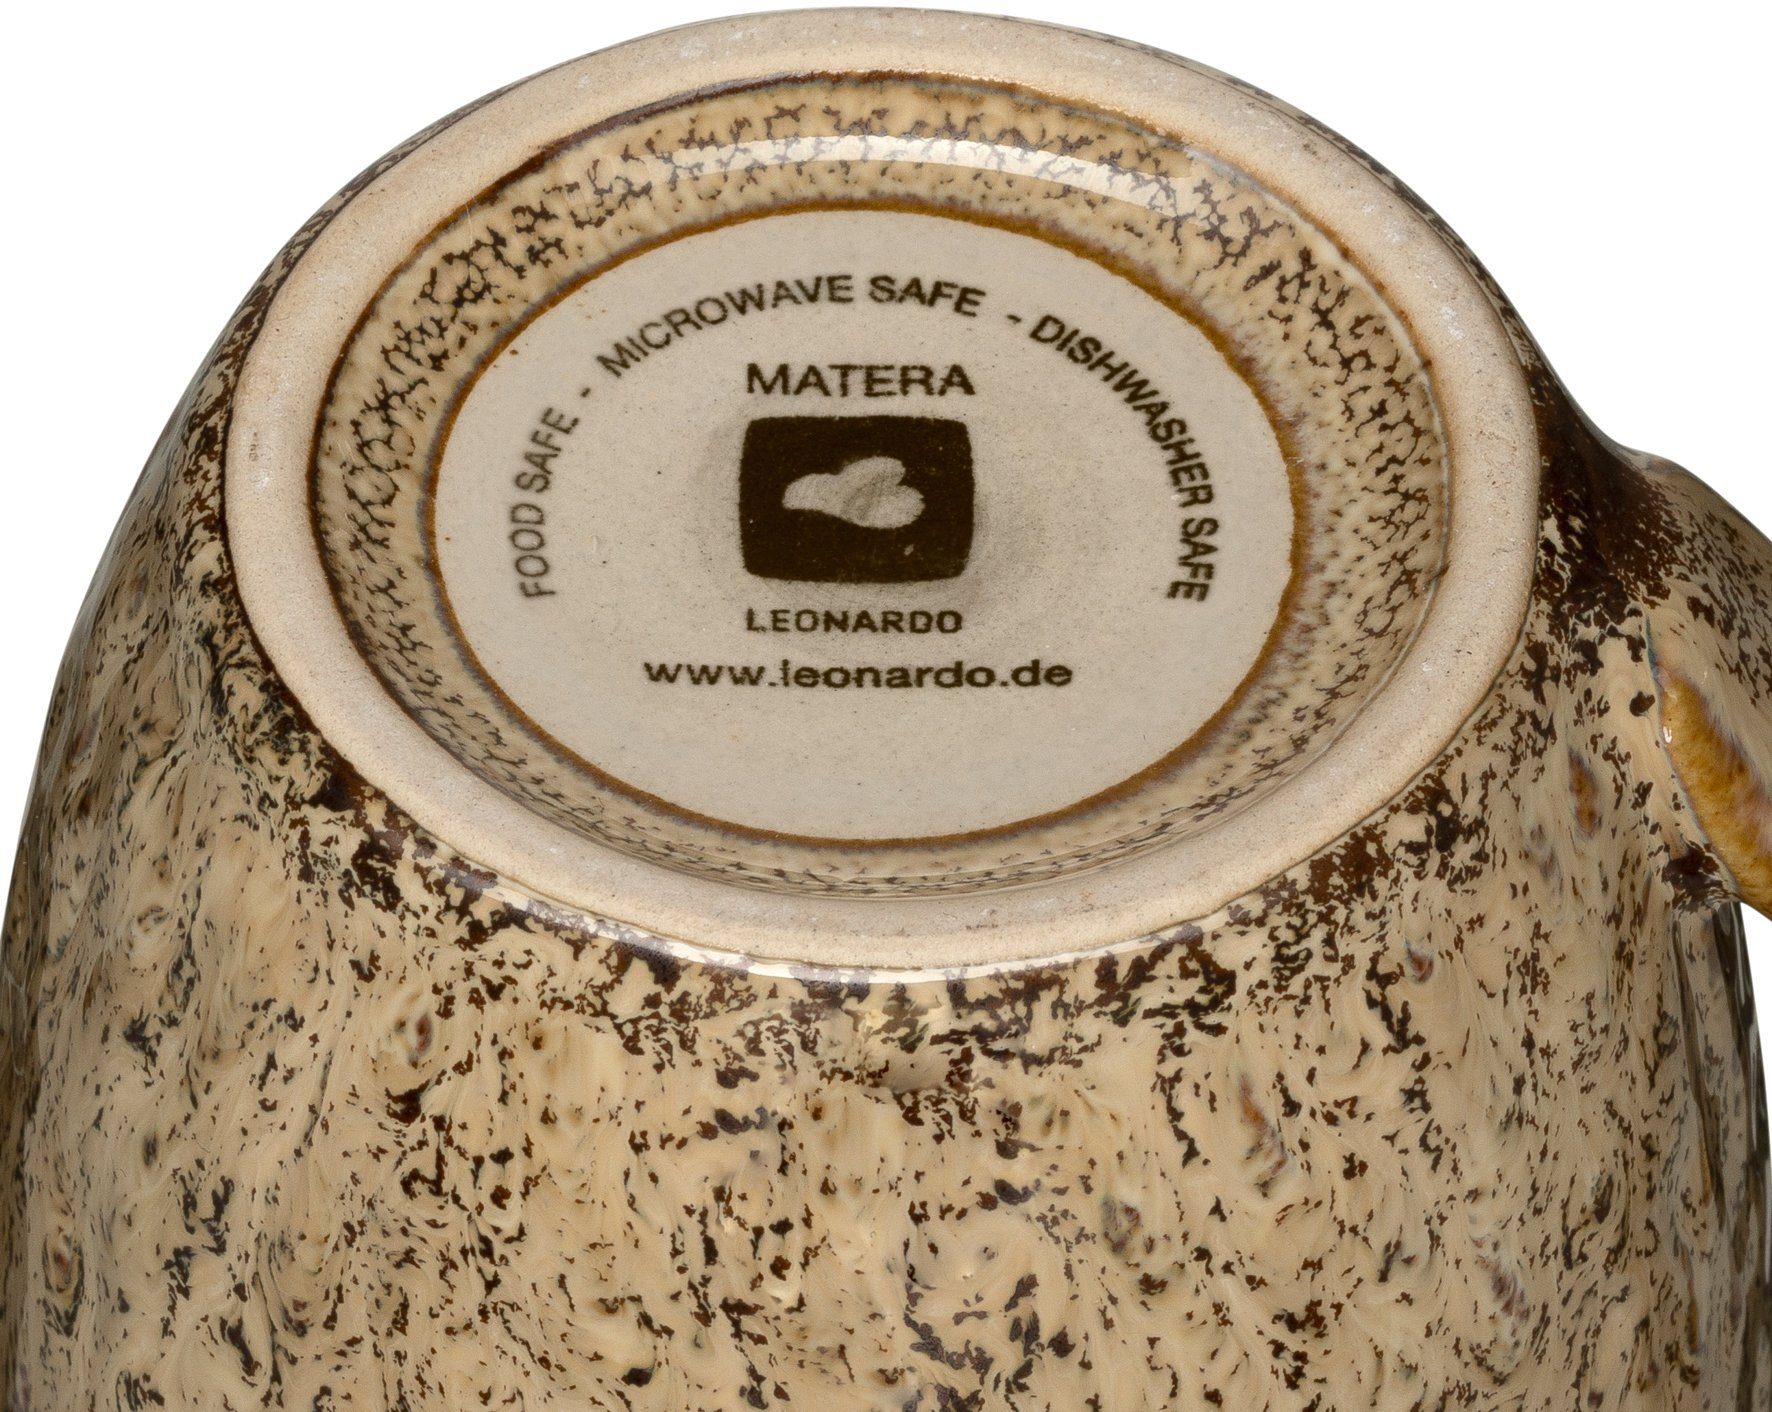 Matera, LEONARDO 6-teilig Becher ml, Keramik, 430 sand